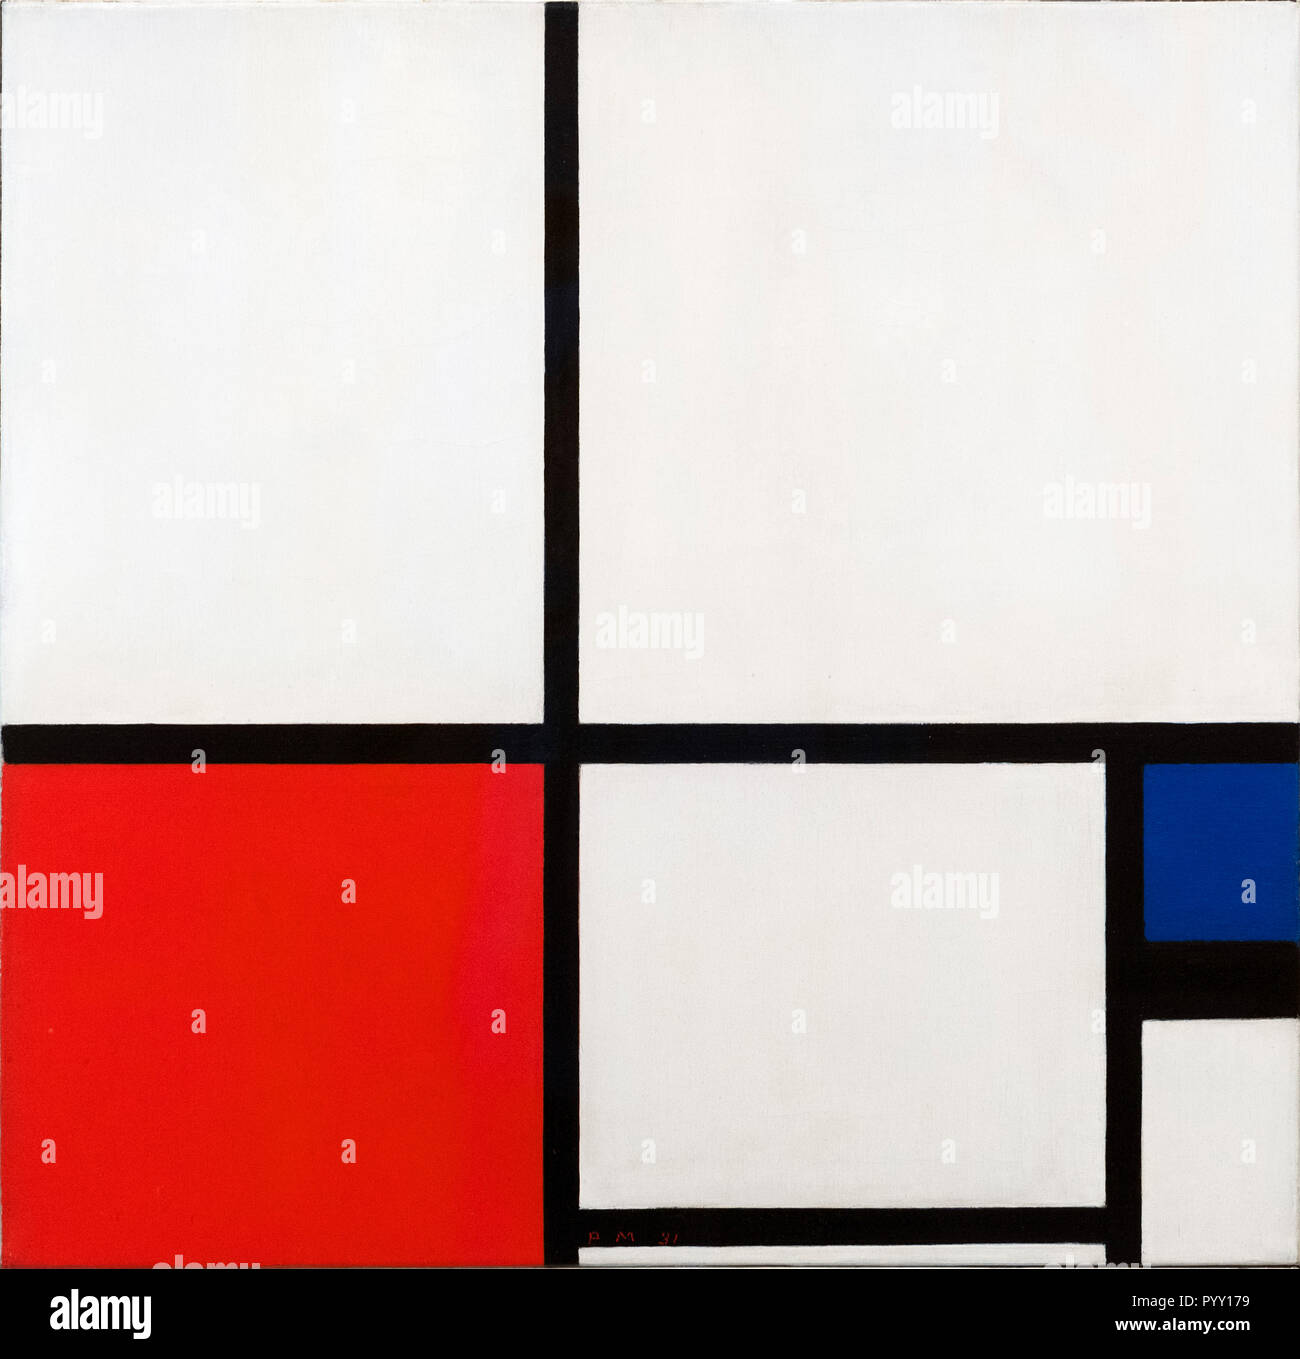 Zusammensetzung in Farben/Komposition Nr. ich mit Roten und Blauen von Piet Mondrian (Mondriaan) (1872-1944), Öl auf Leinwand, 1931 Stockfoto